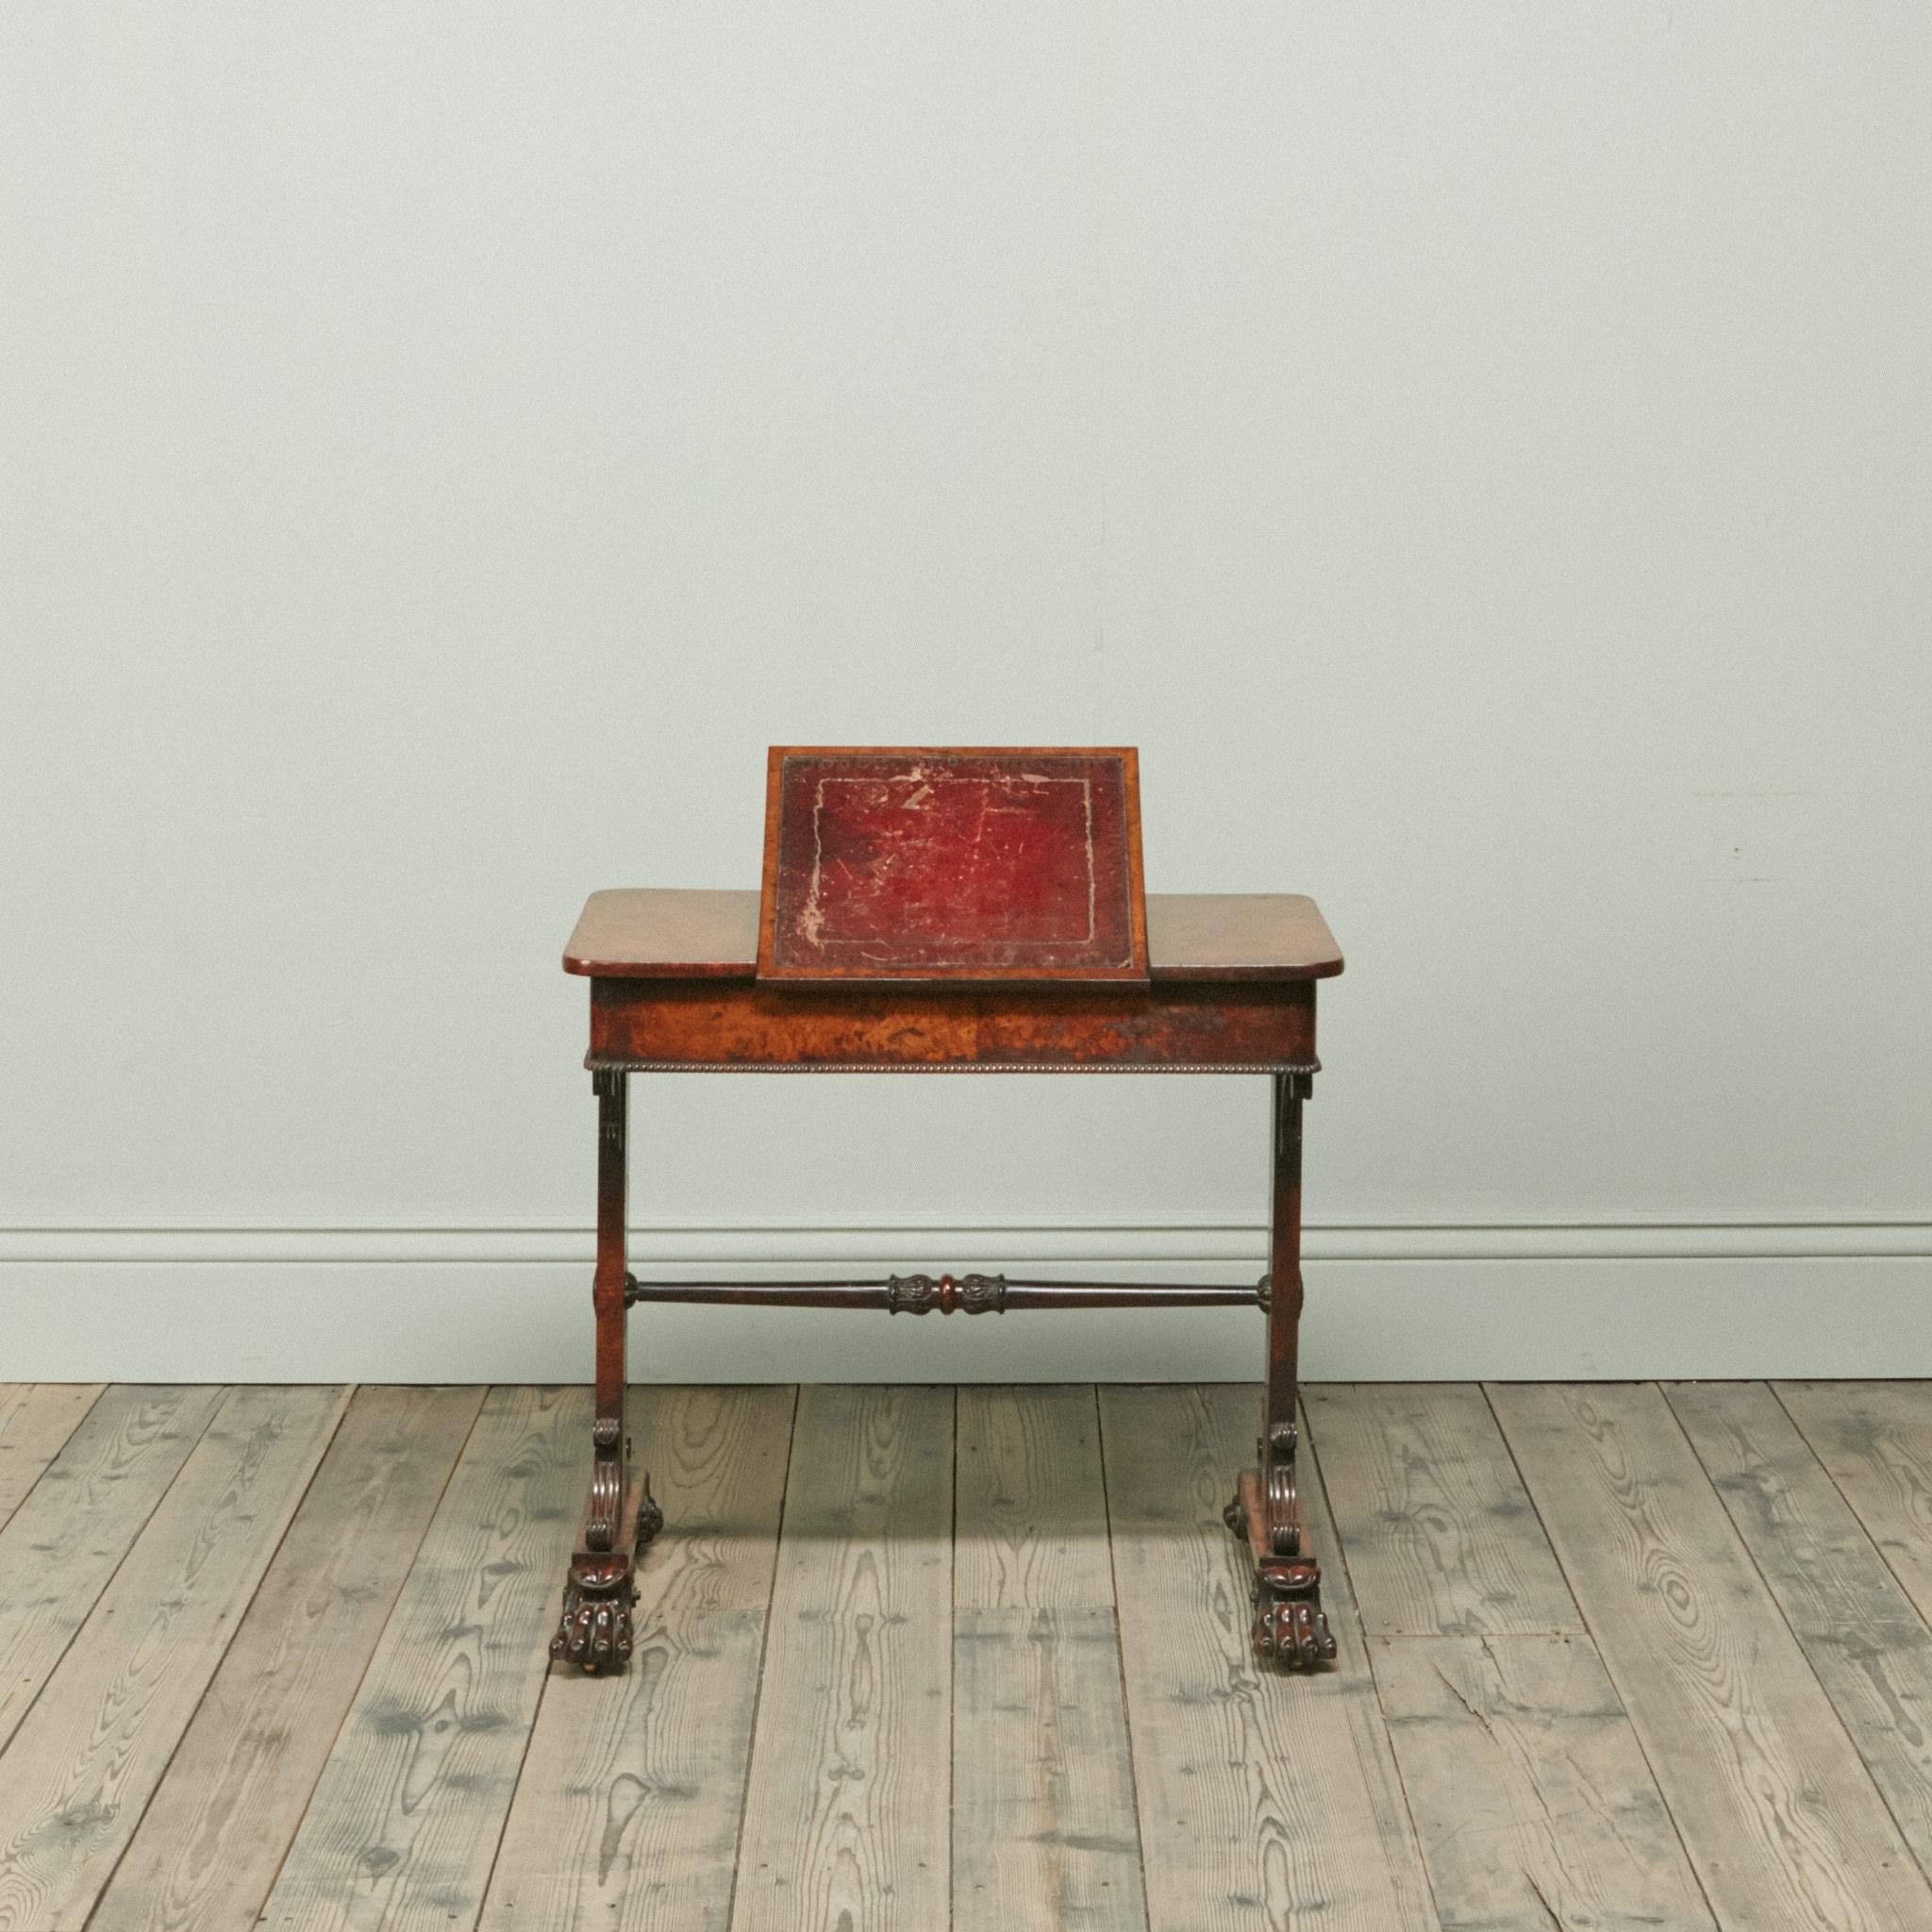 Très belle table à écrire en chêne têtard de style George IV, avec cuir rouge marocain d'origine et patine exceptionnelle du chêne. A la manière de George Smith. La pente d'écriture en cuir rouge ciselé avec support de chevalet est flanquée de